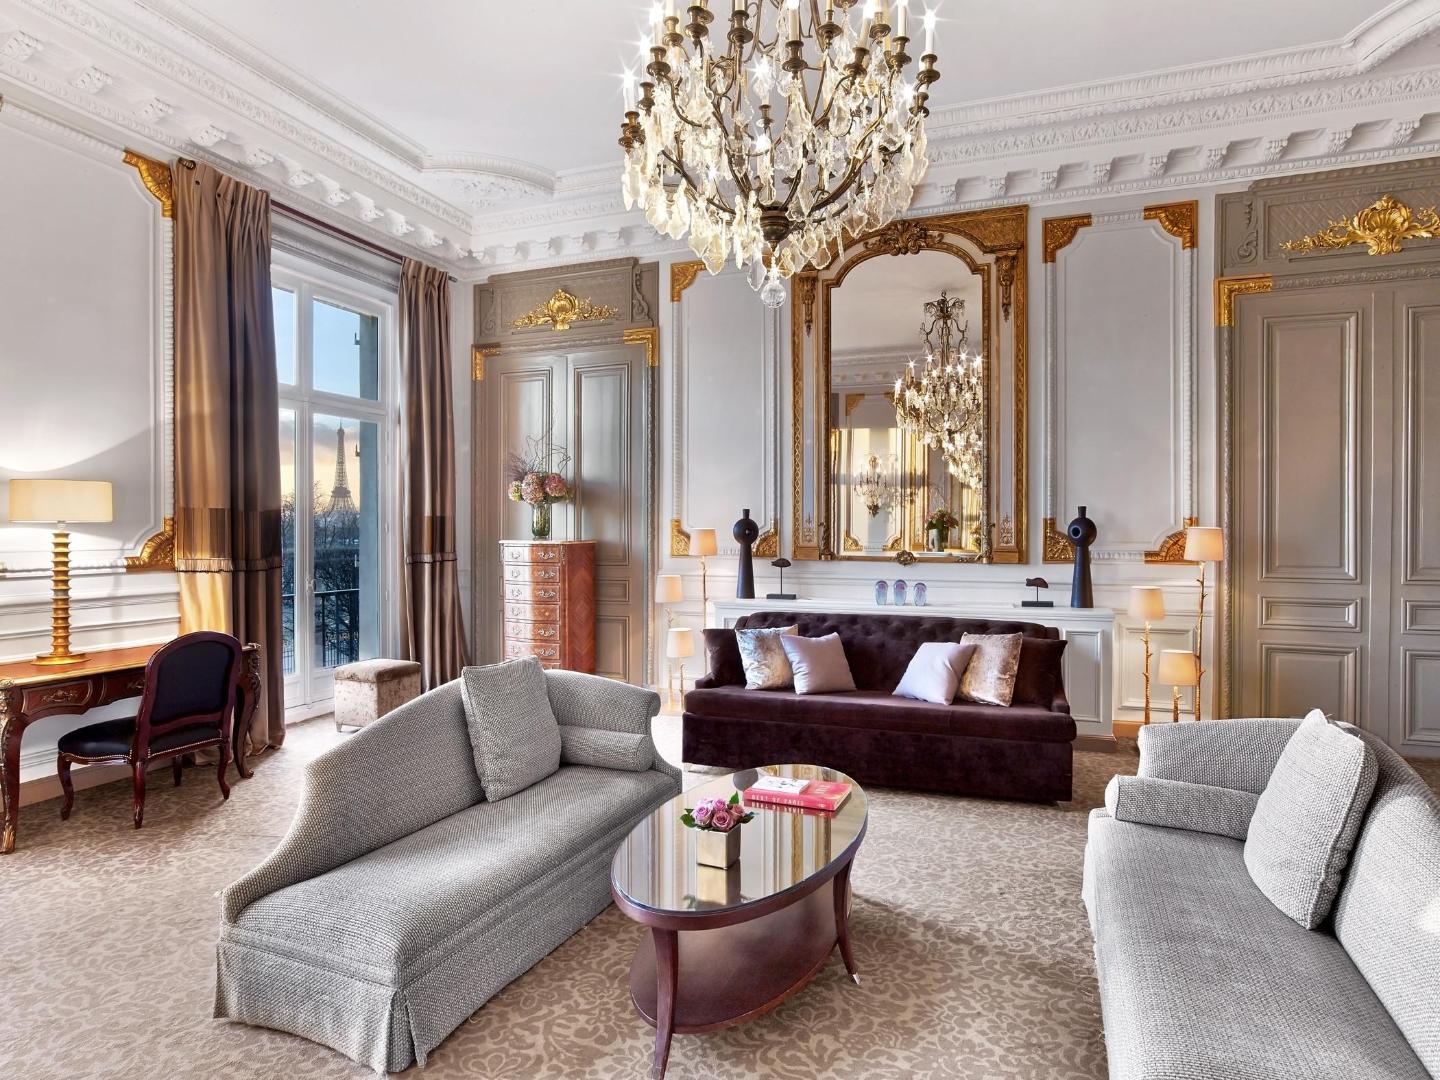 ALTOUR - SELECT Hotels & Resorts - The Westin Paris Vendome